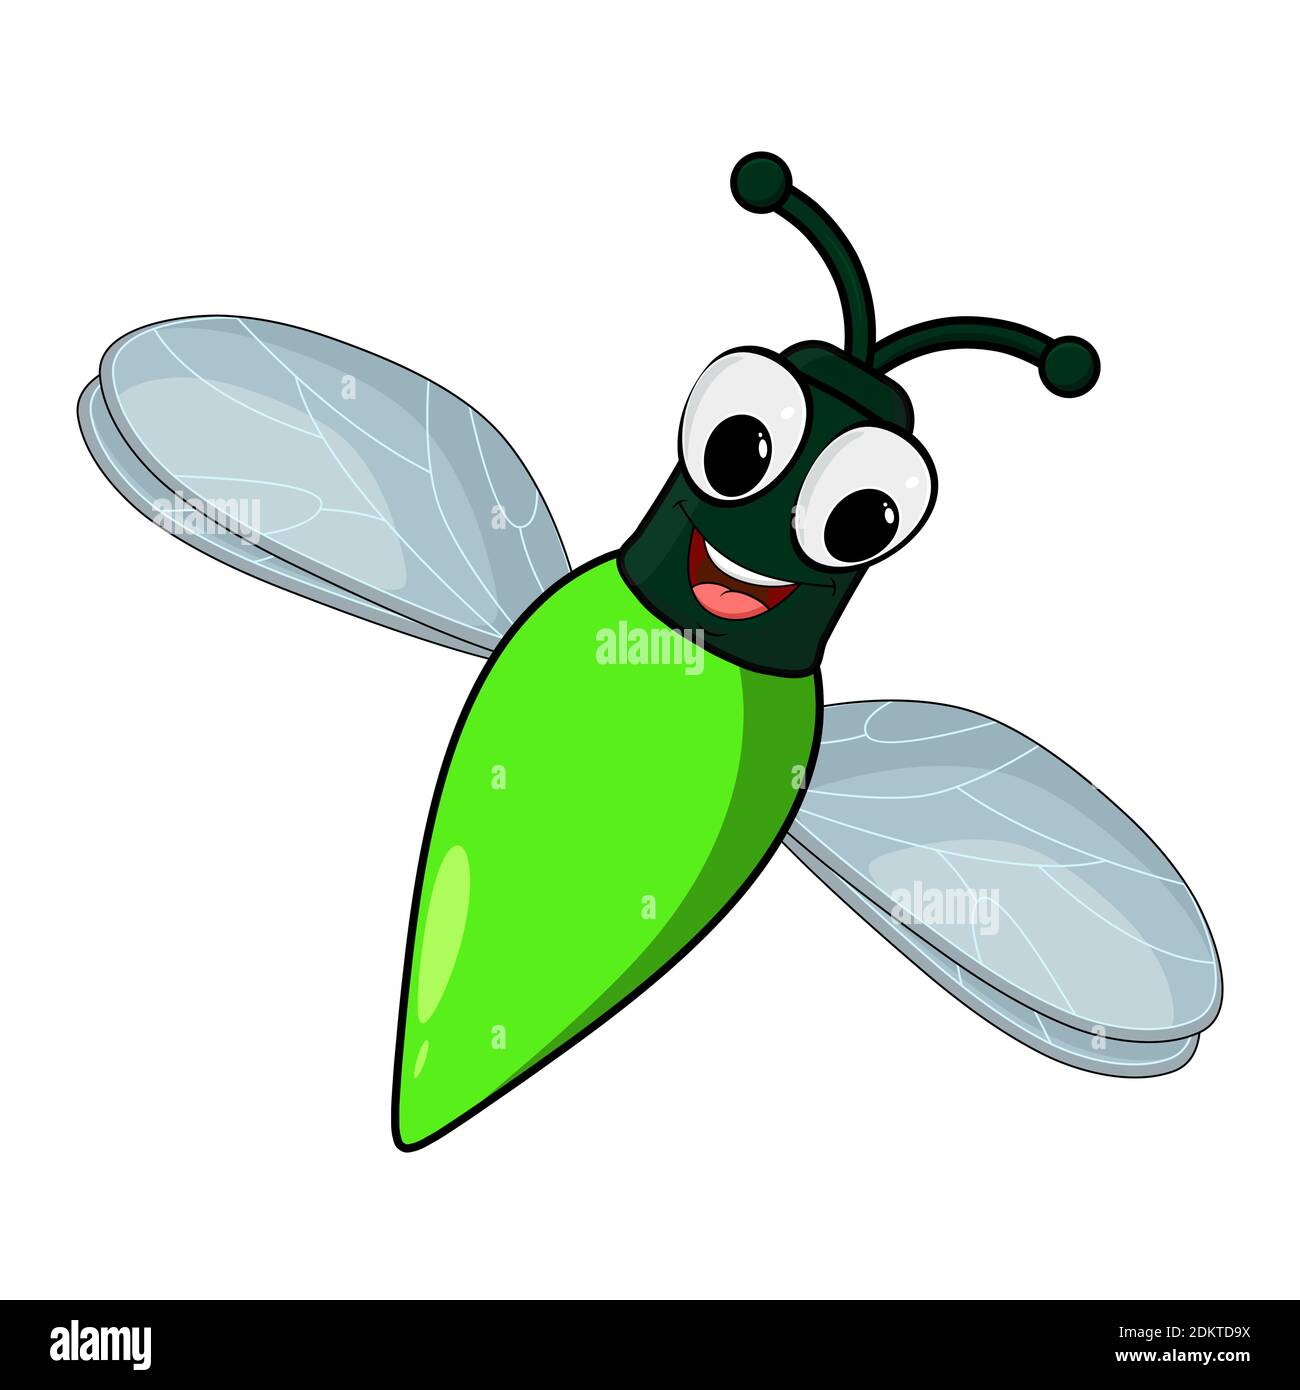 Illustration de dessin animé d'insecte Firefly isolée sur fond blanc. Insecte lucarne avec abdomen brillant. Comique personnage mignon avec les yeux et le sourire. Vecteur Illustration de Vecteur